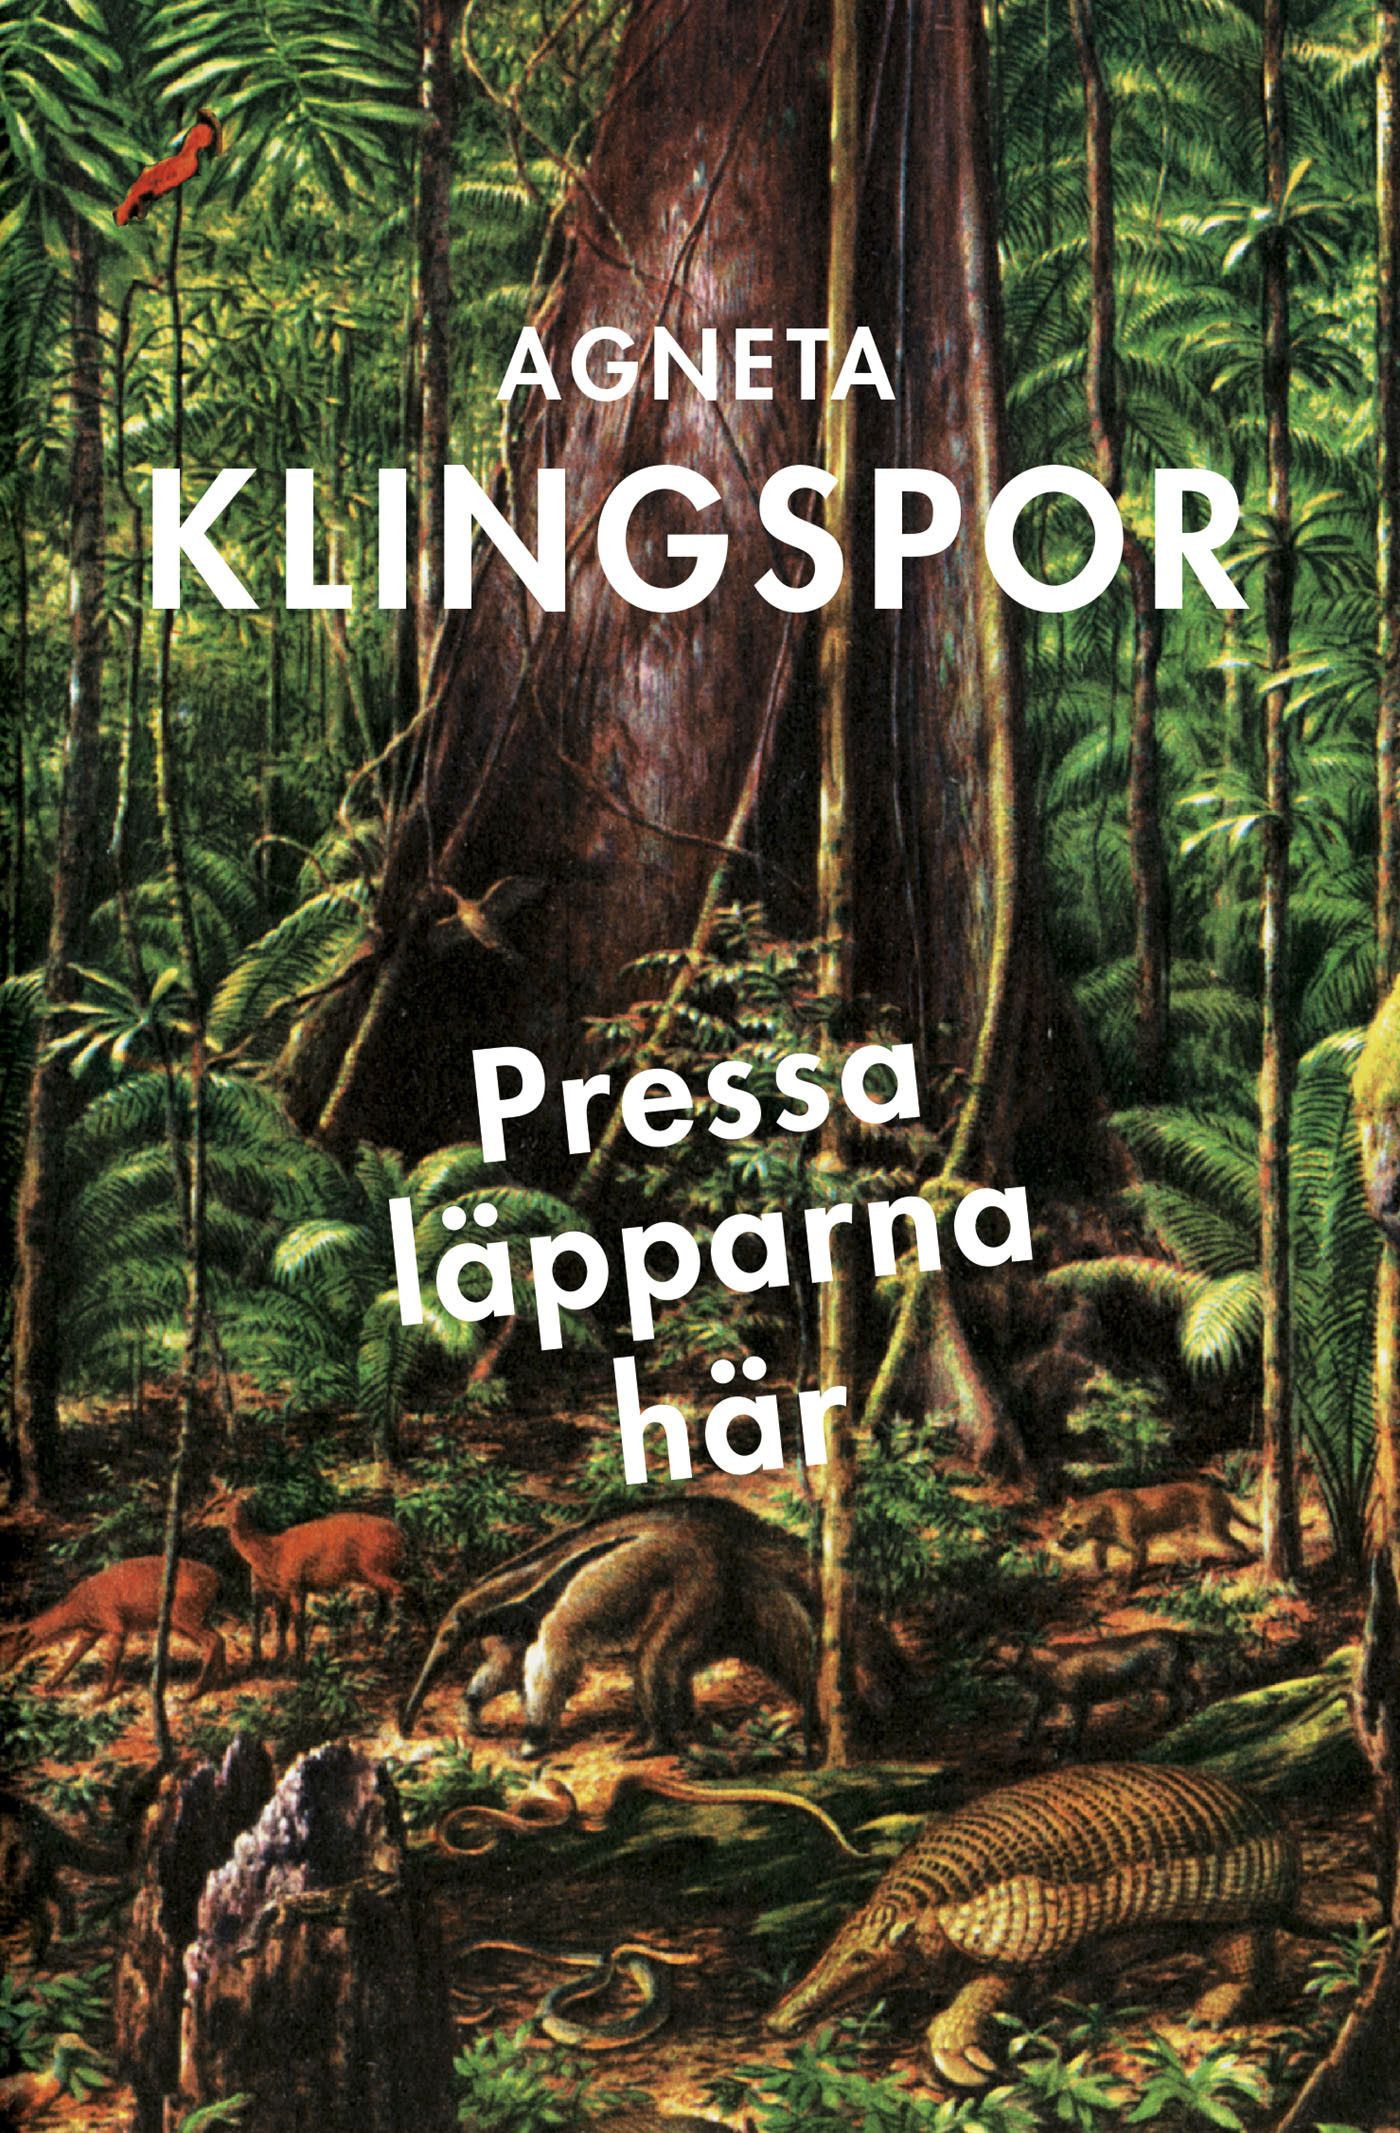 Pressa läpparna här, e-bok av Agneta Klingspor